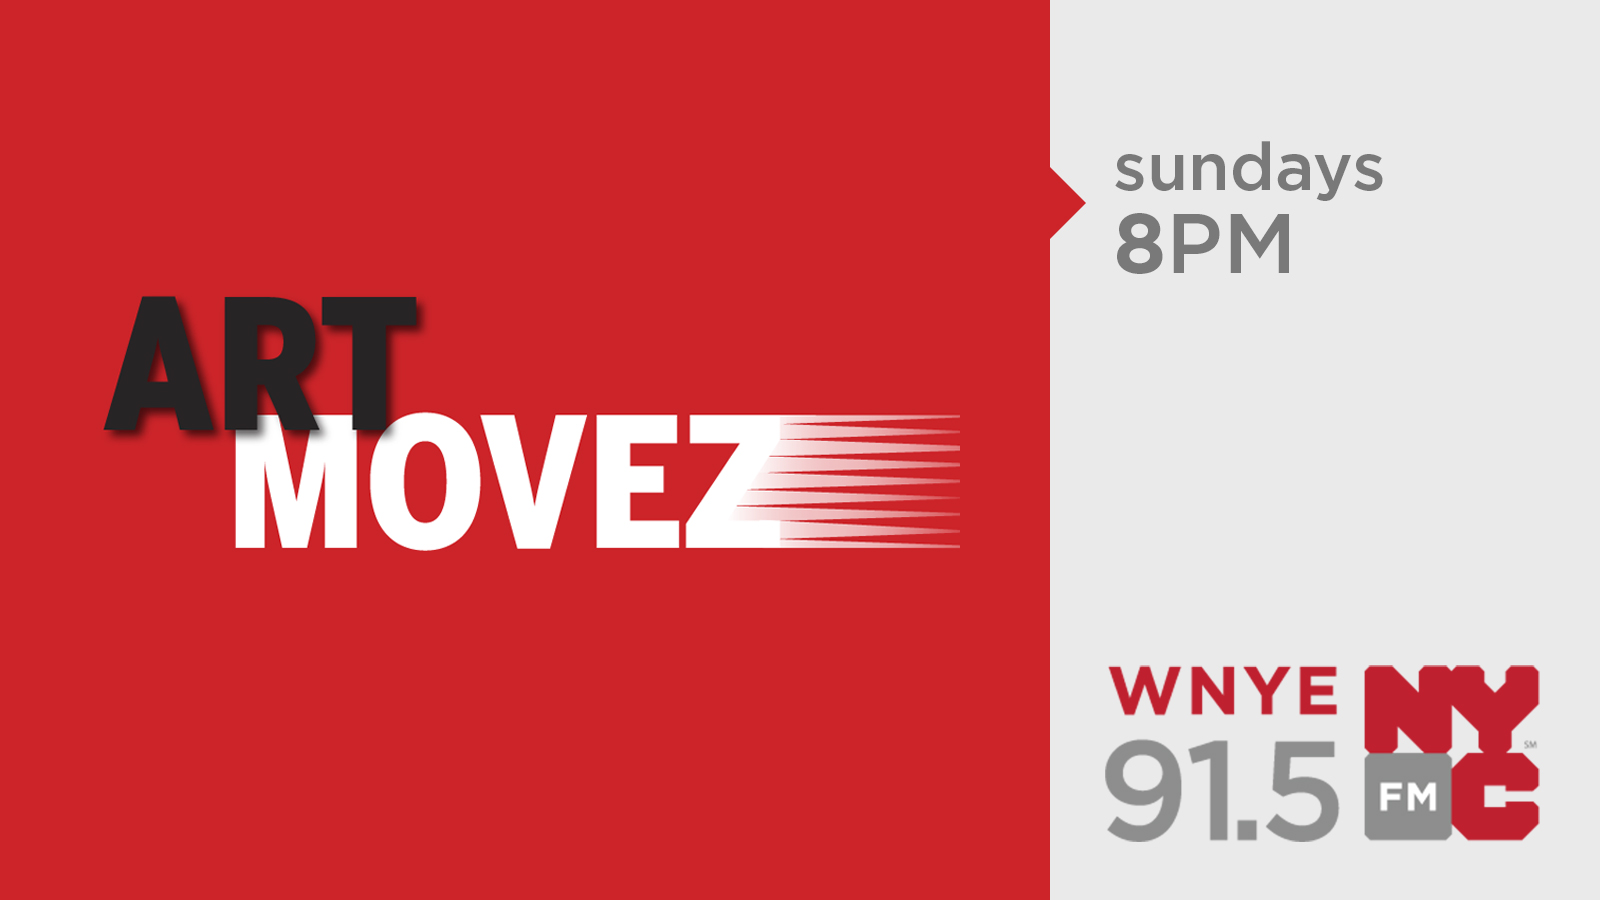 Art Movez logo image, Sundays 8PM on WNYE 95.1FM 